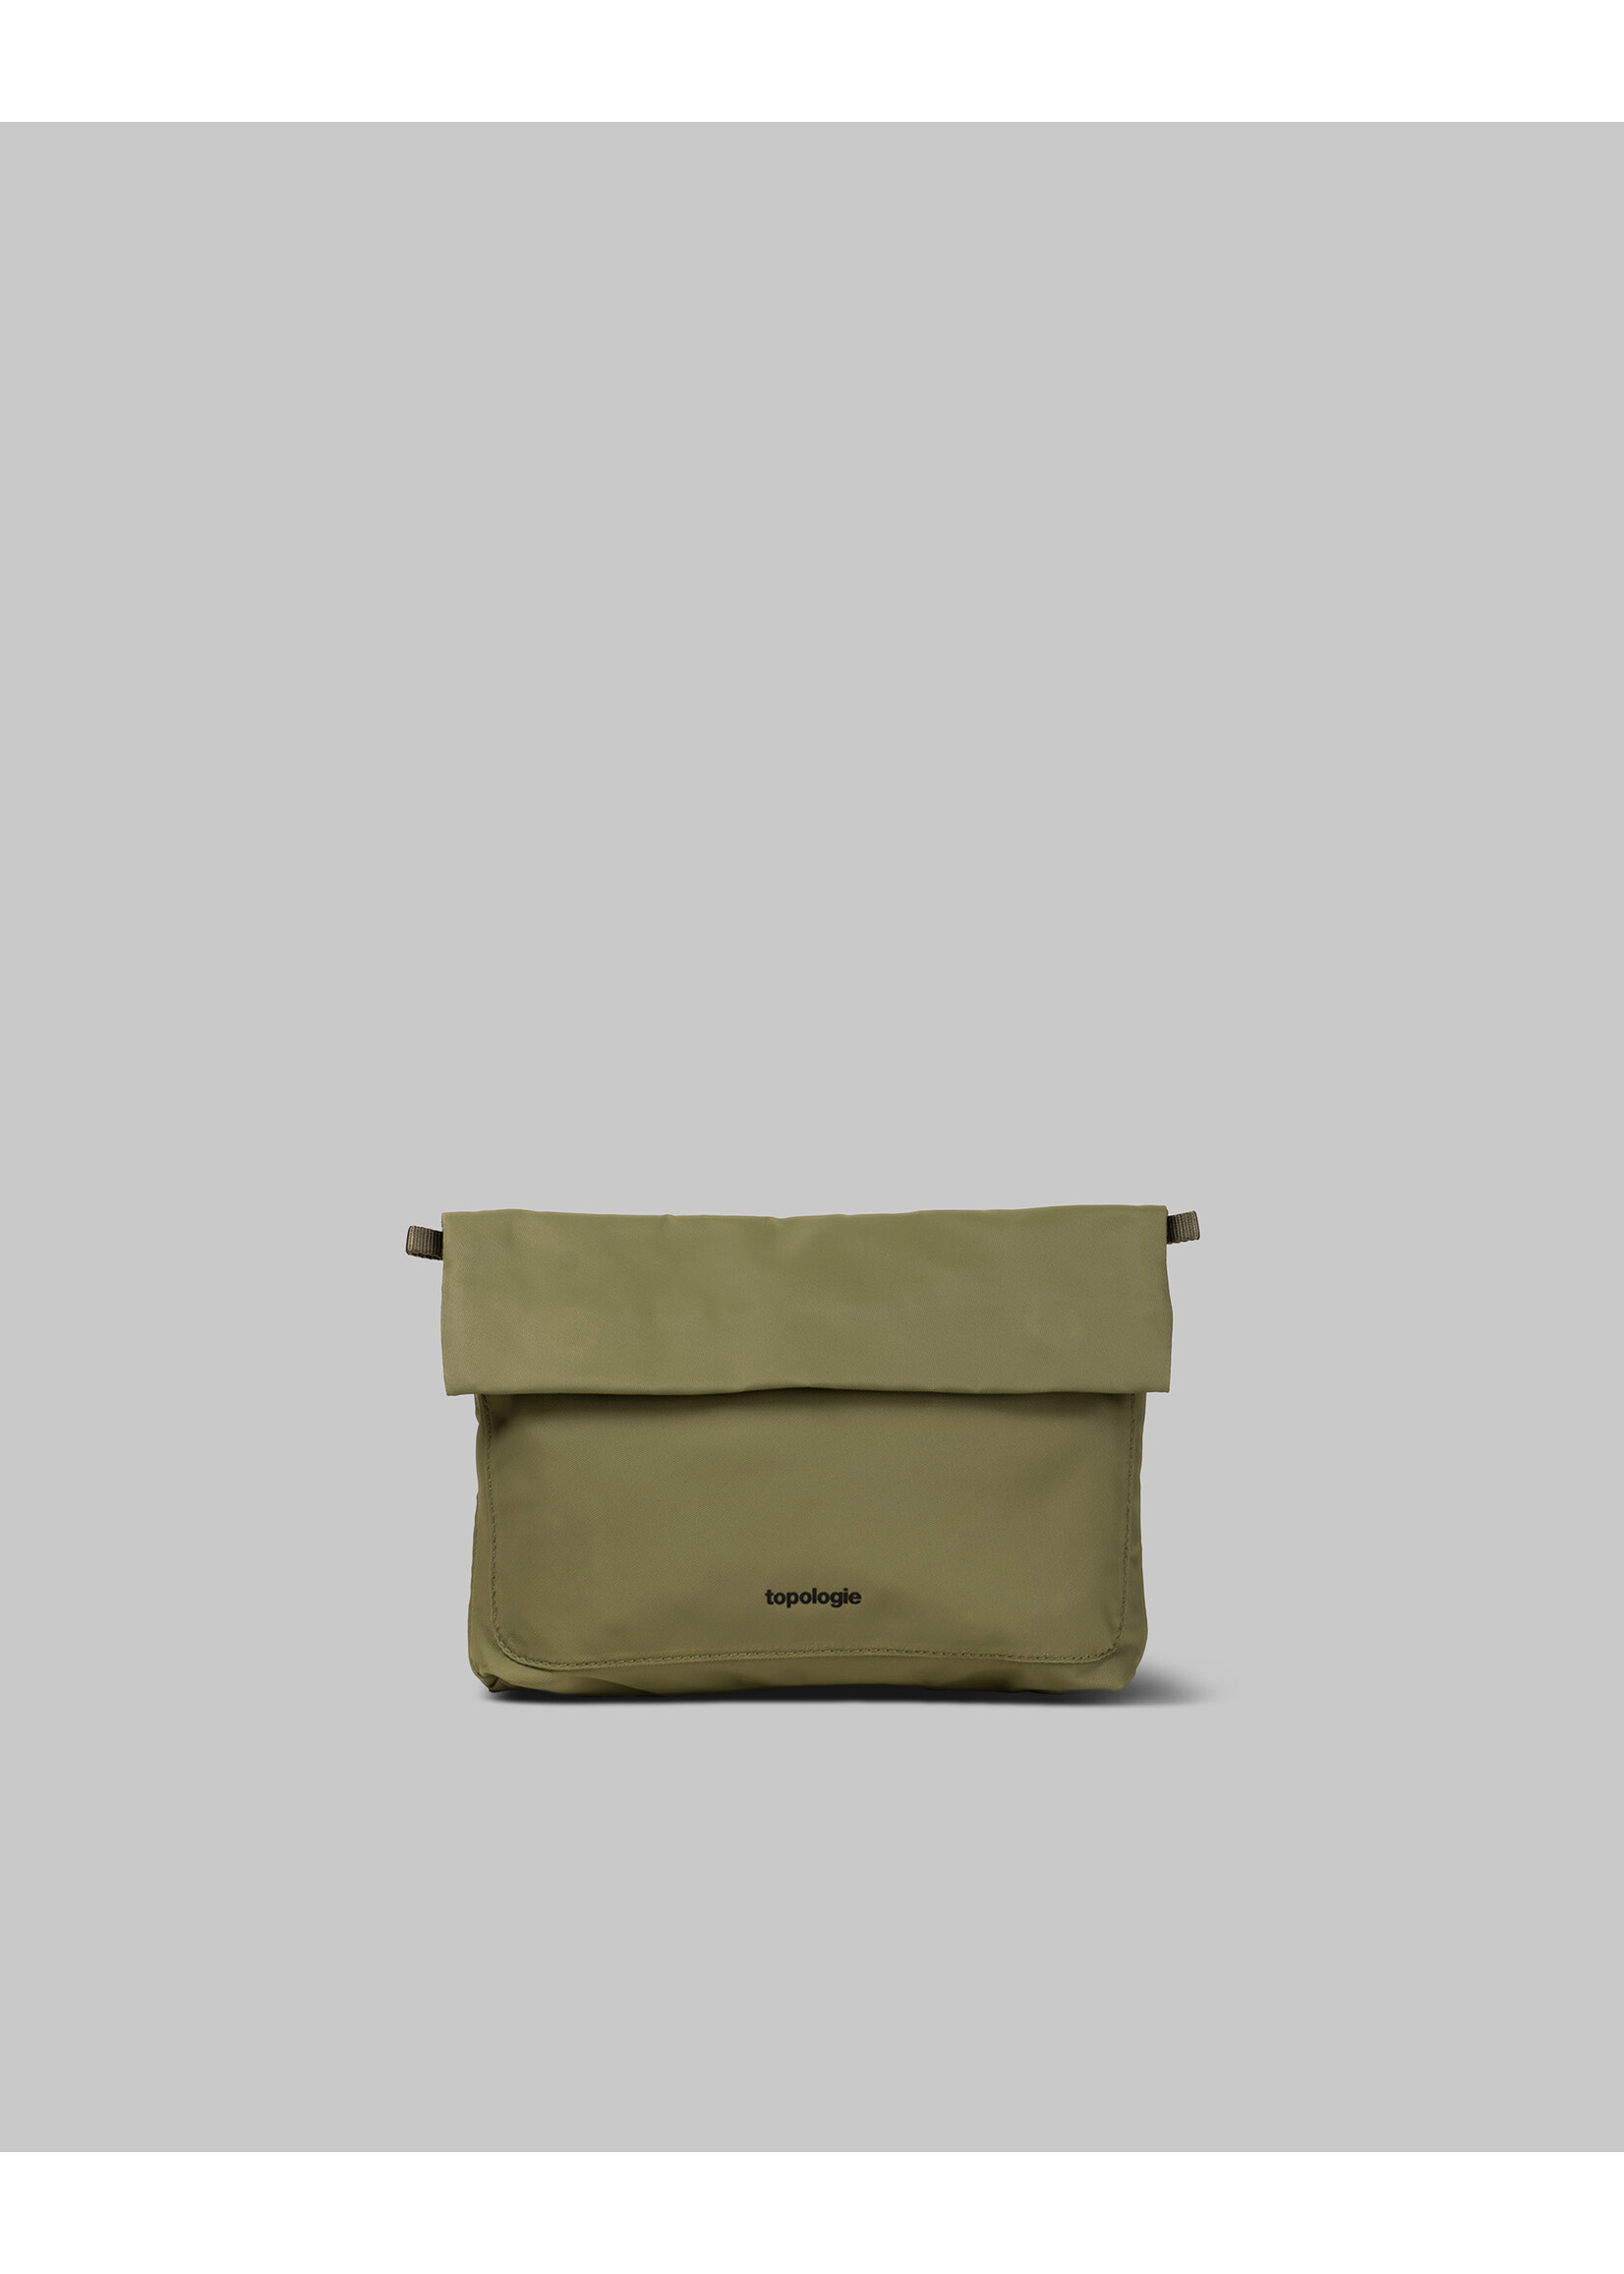 Topologie Musette Medium Bag